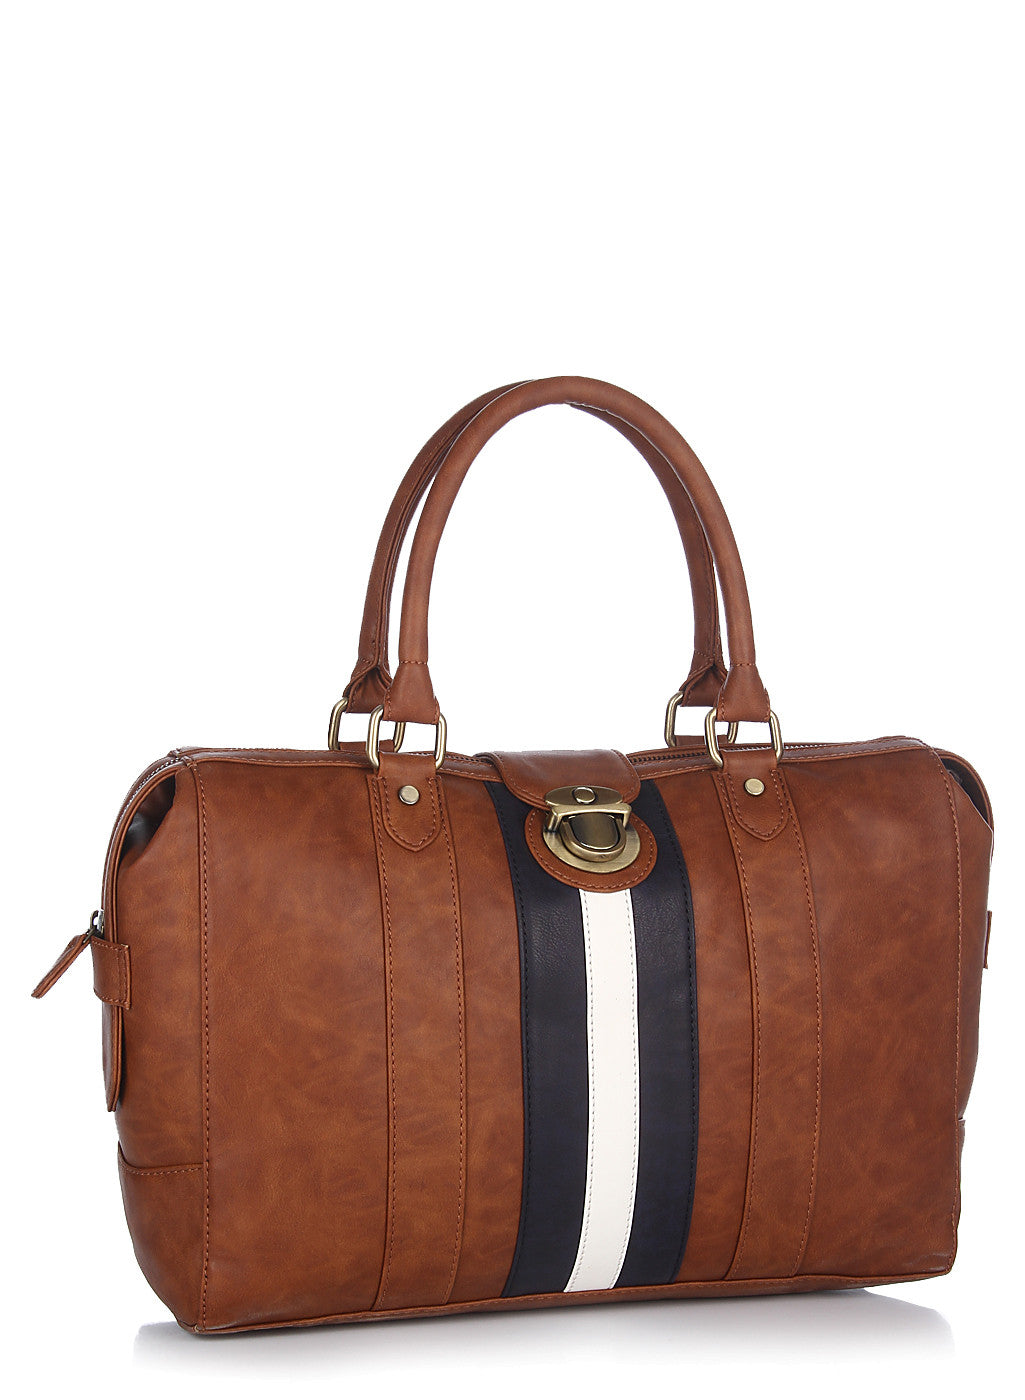 Tan/Brown Leather Handbag